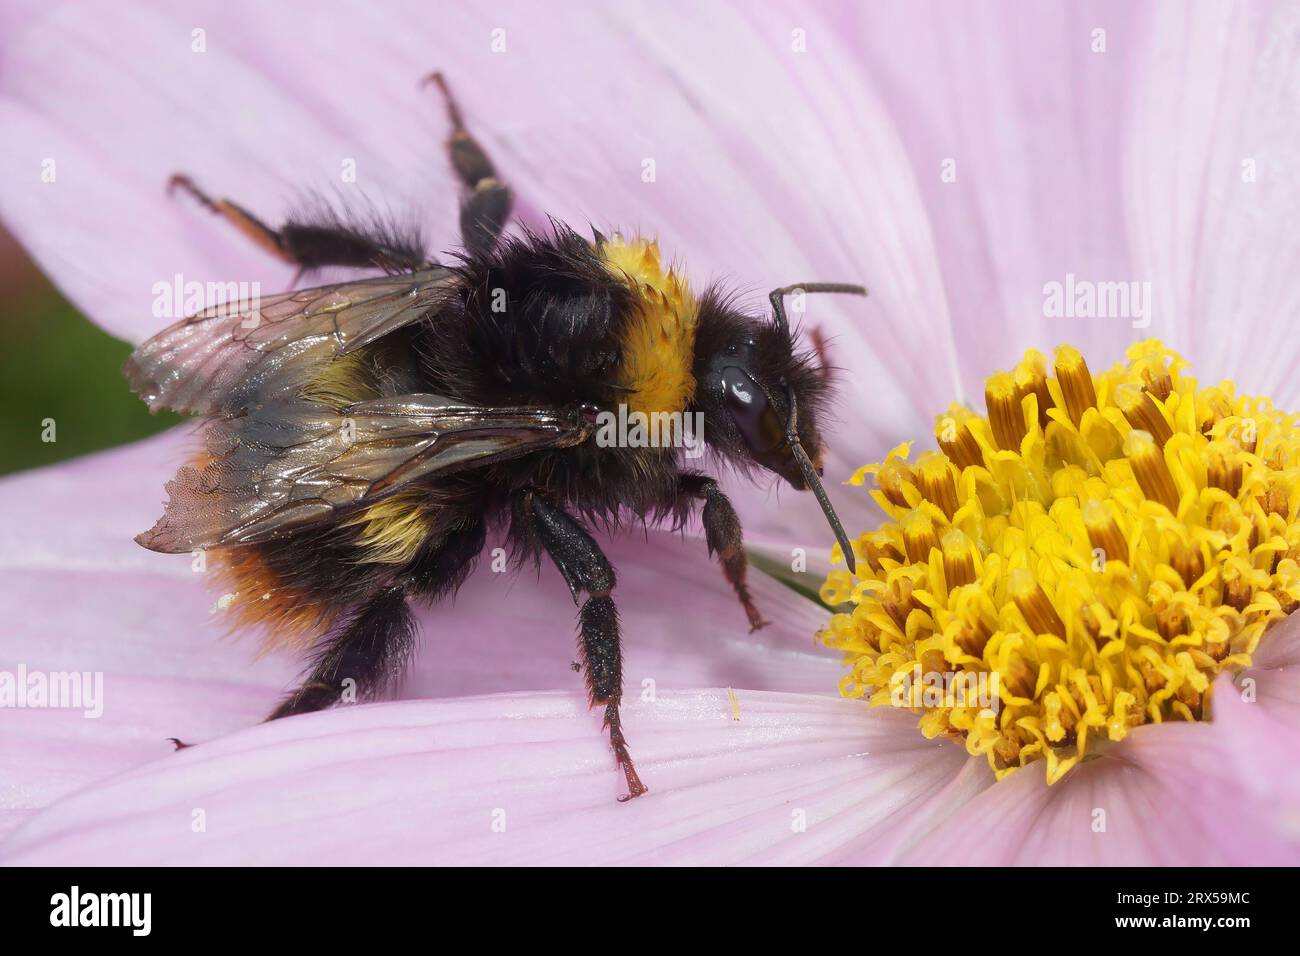 Natürliche Nahaufnahme auf einer gelben flauschigen Königin Early Bumble-Bee, Bombus pratorum, die auf einer rosa Kosmos-Blume sitzt Stockfoto